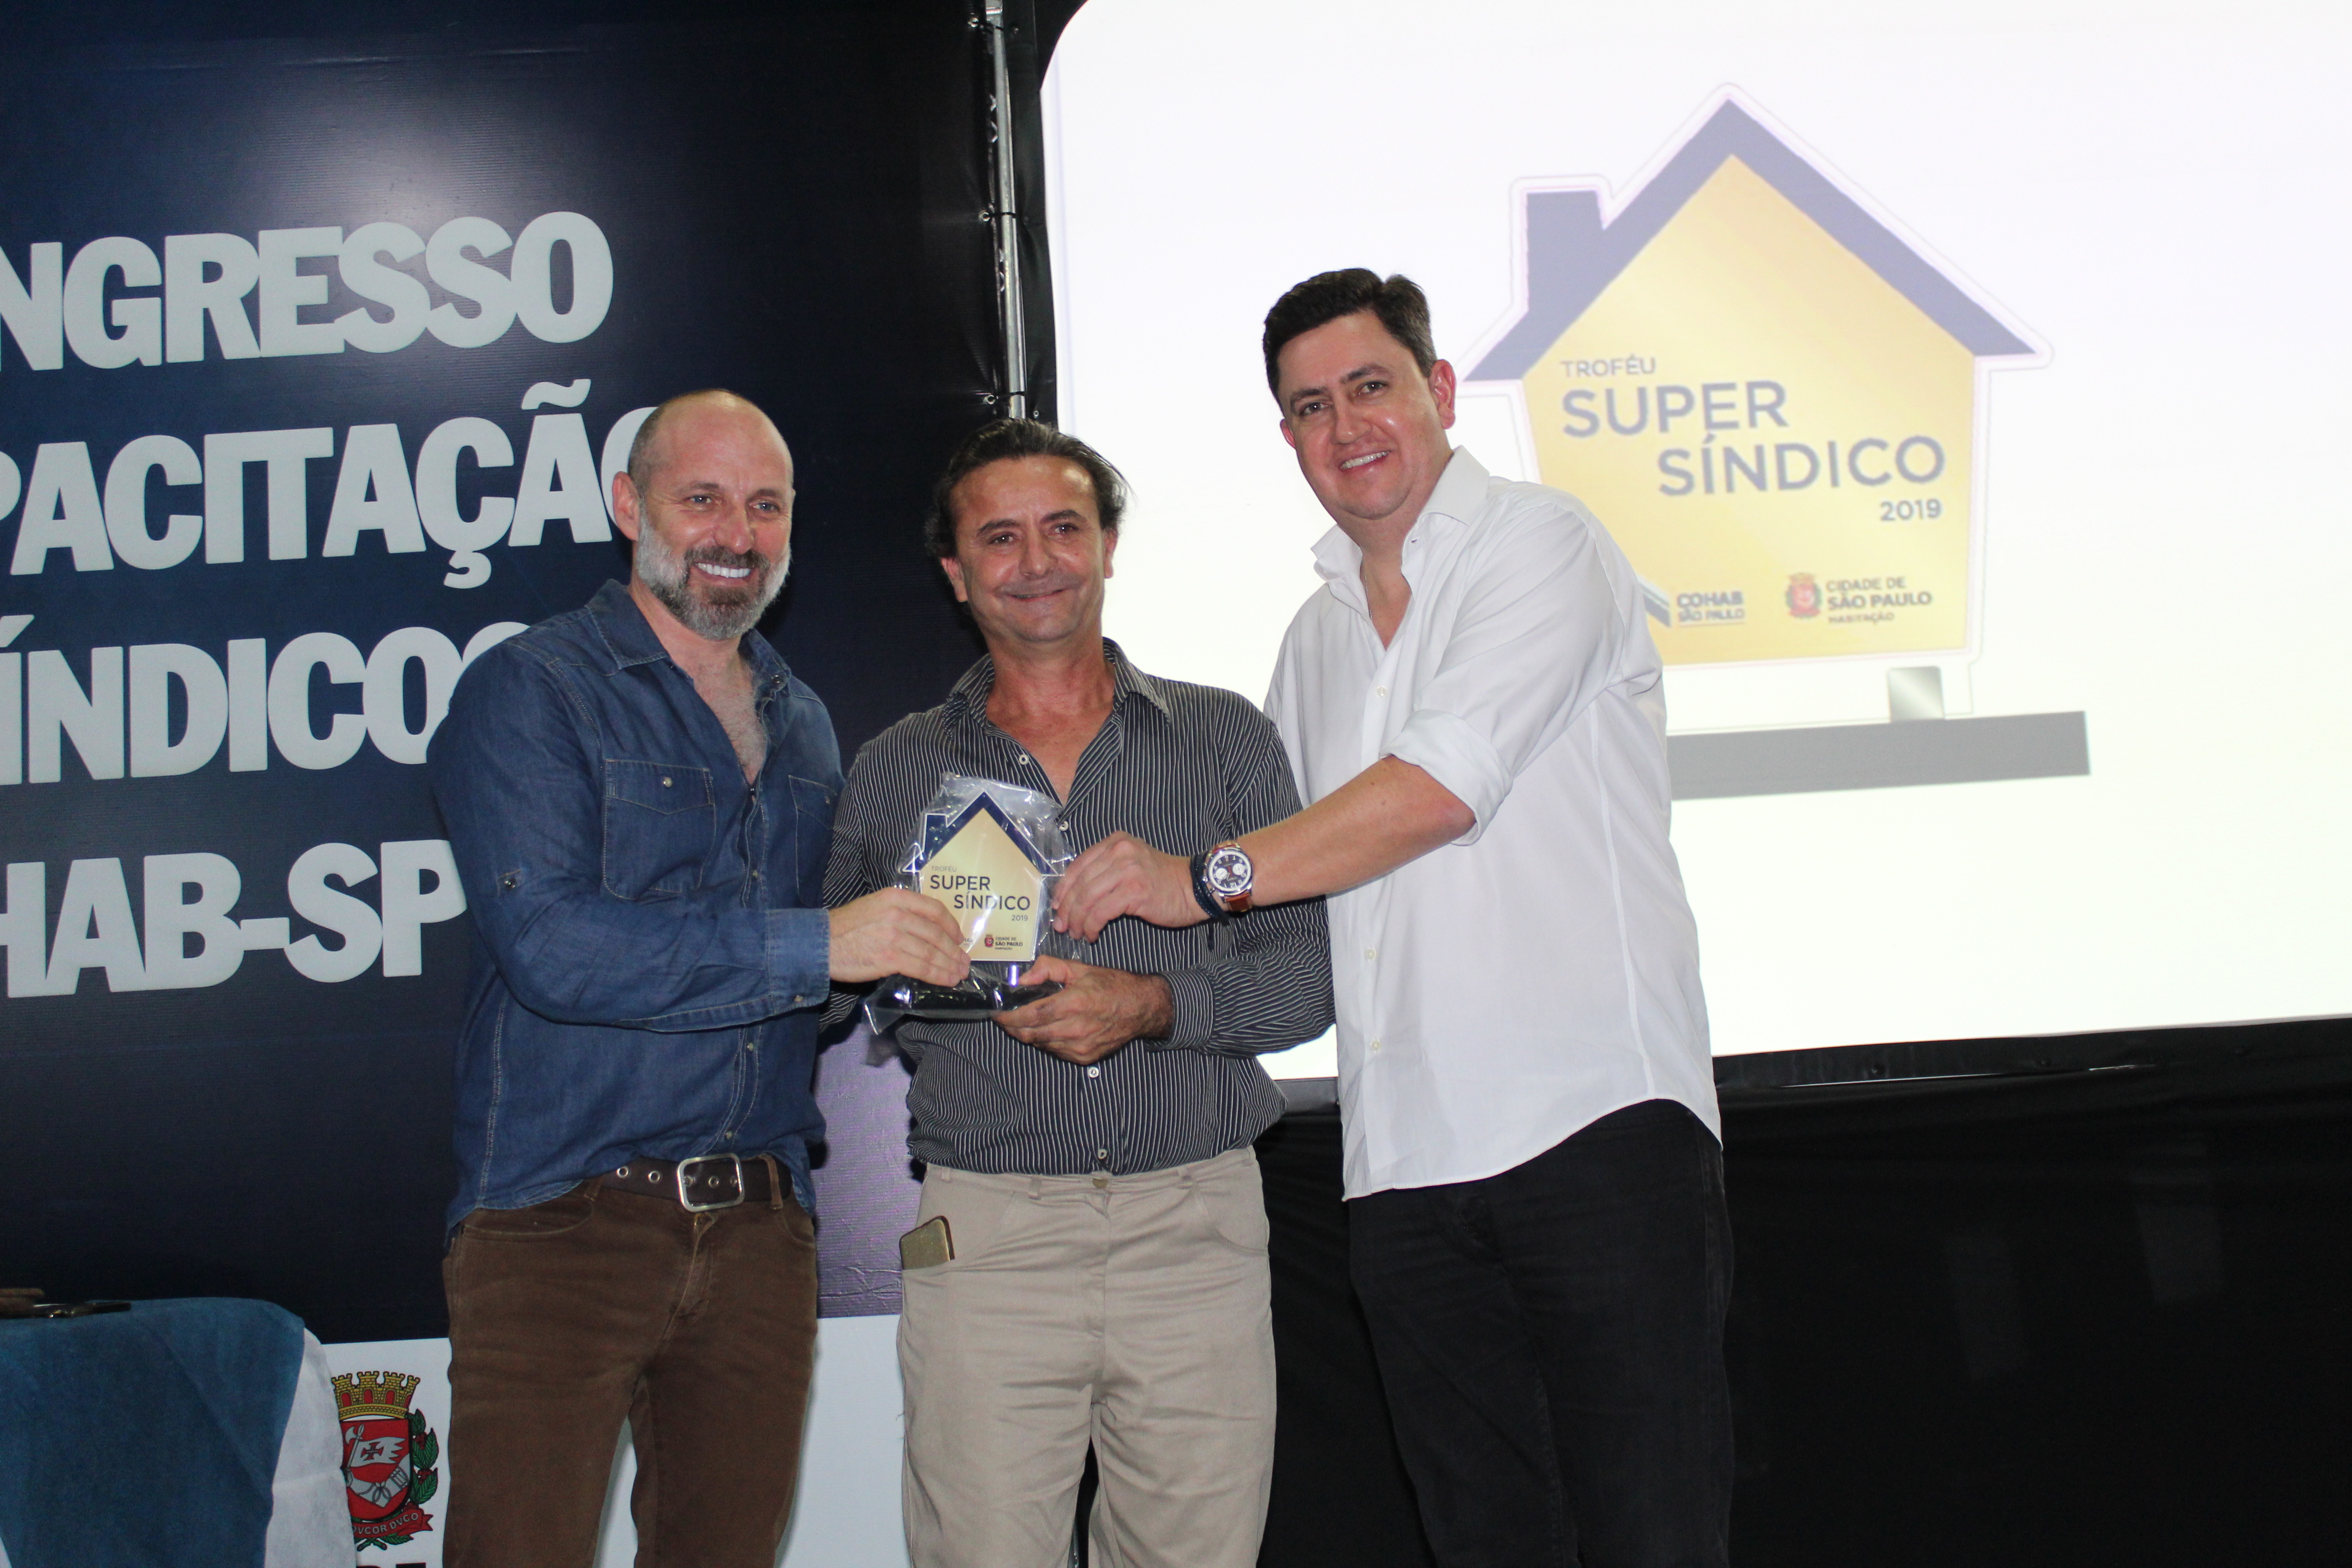 Na foto, da esquerda pra direta está Marcio Rachkorsky, no meio com o troféu o sindico Dorides Carlos de Almeida e ao lado dele está o presidente da Cohab Alex Peixe. 